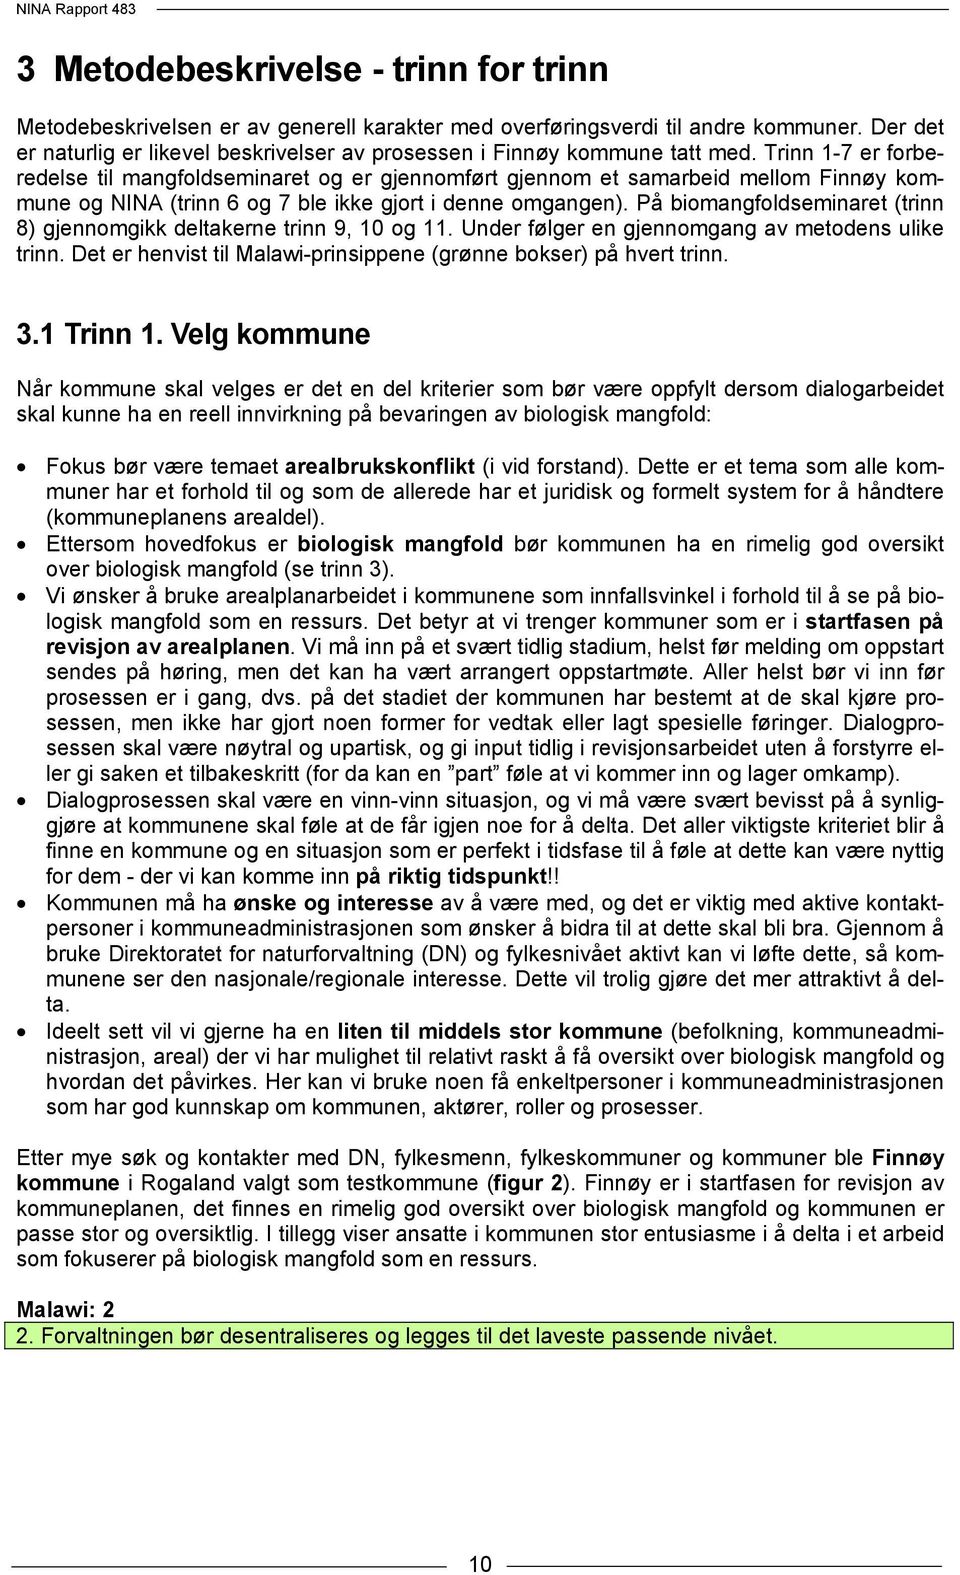 Trinn 1-7 er forberedelse til mangfoldseminaret og er gjennomført gjennom et samarbeid mellom Finnøy kommune og NINA (trinn 6 og 7 ble ikke gjort i denne omgangen).